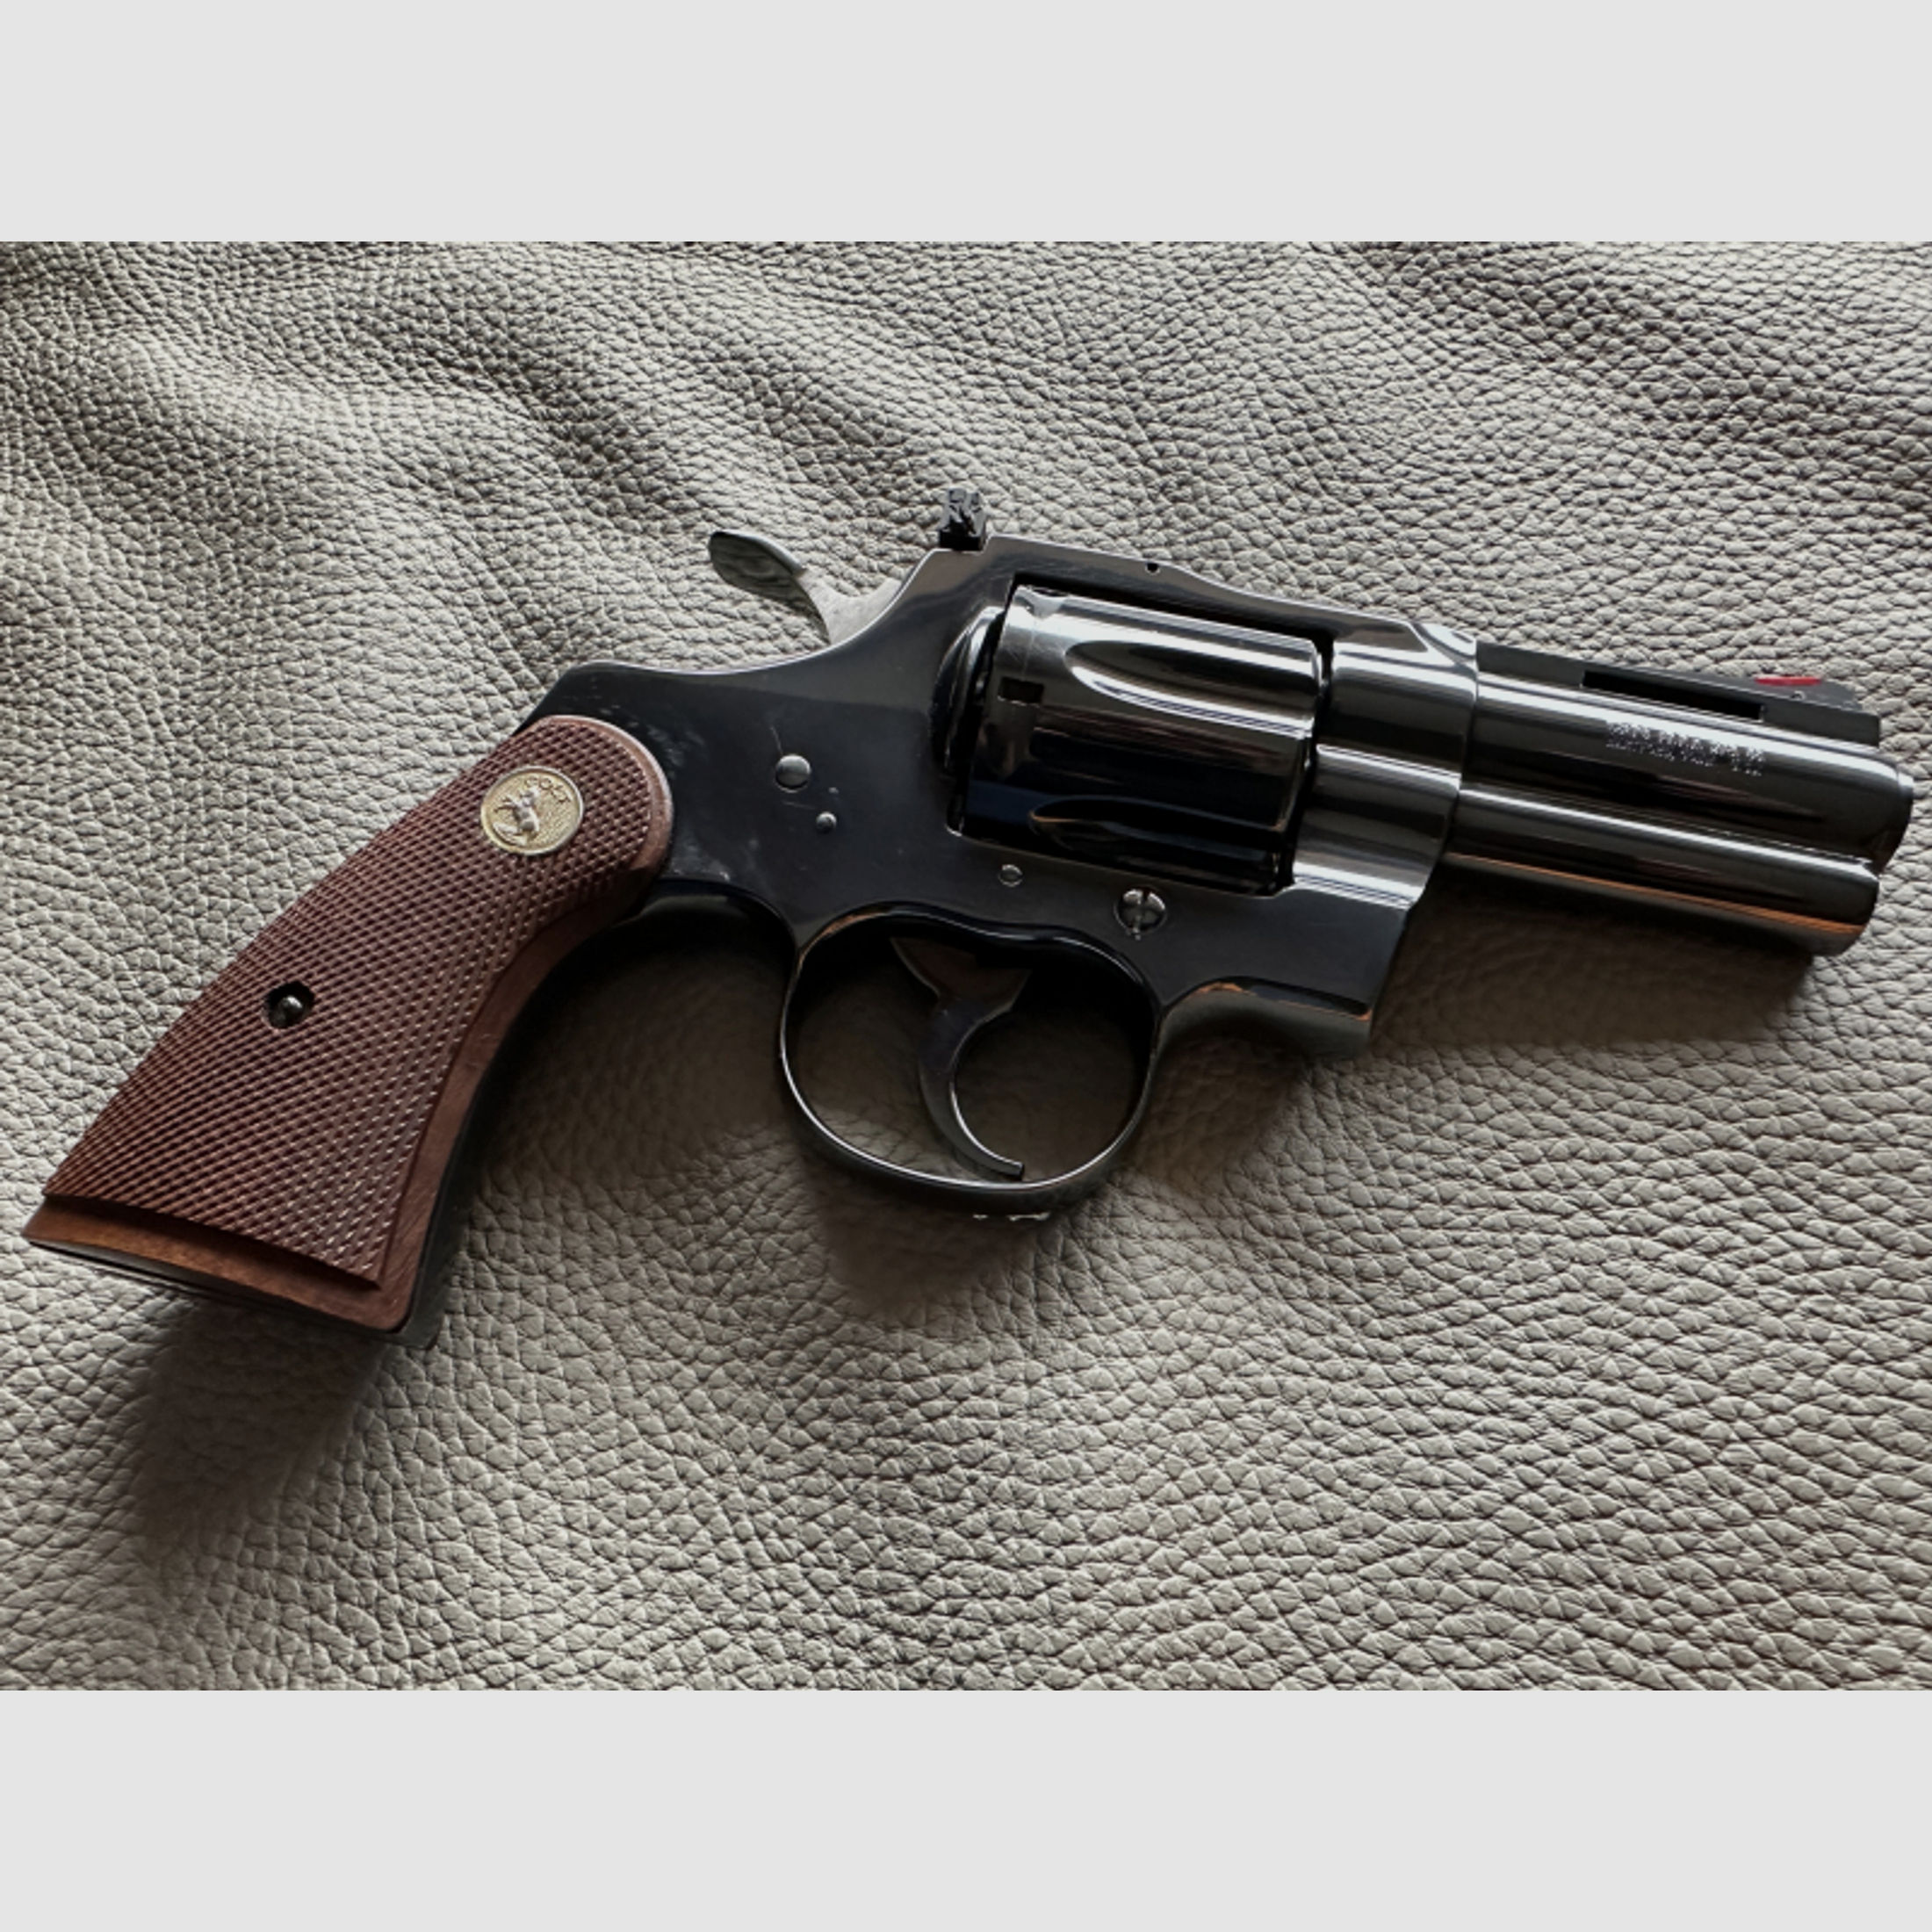 COMBAT Colt PYTHON Kal. 357 Magnum Rarität mit 3 Zoll Lauf!!!!Lee Horton series